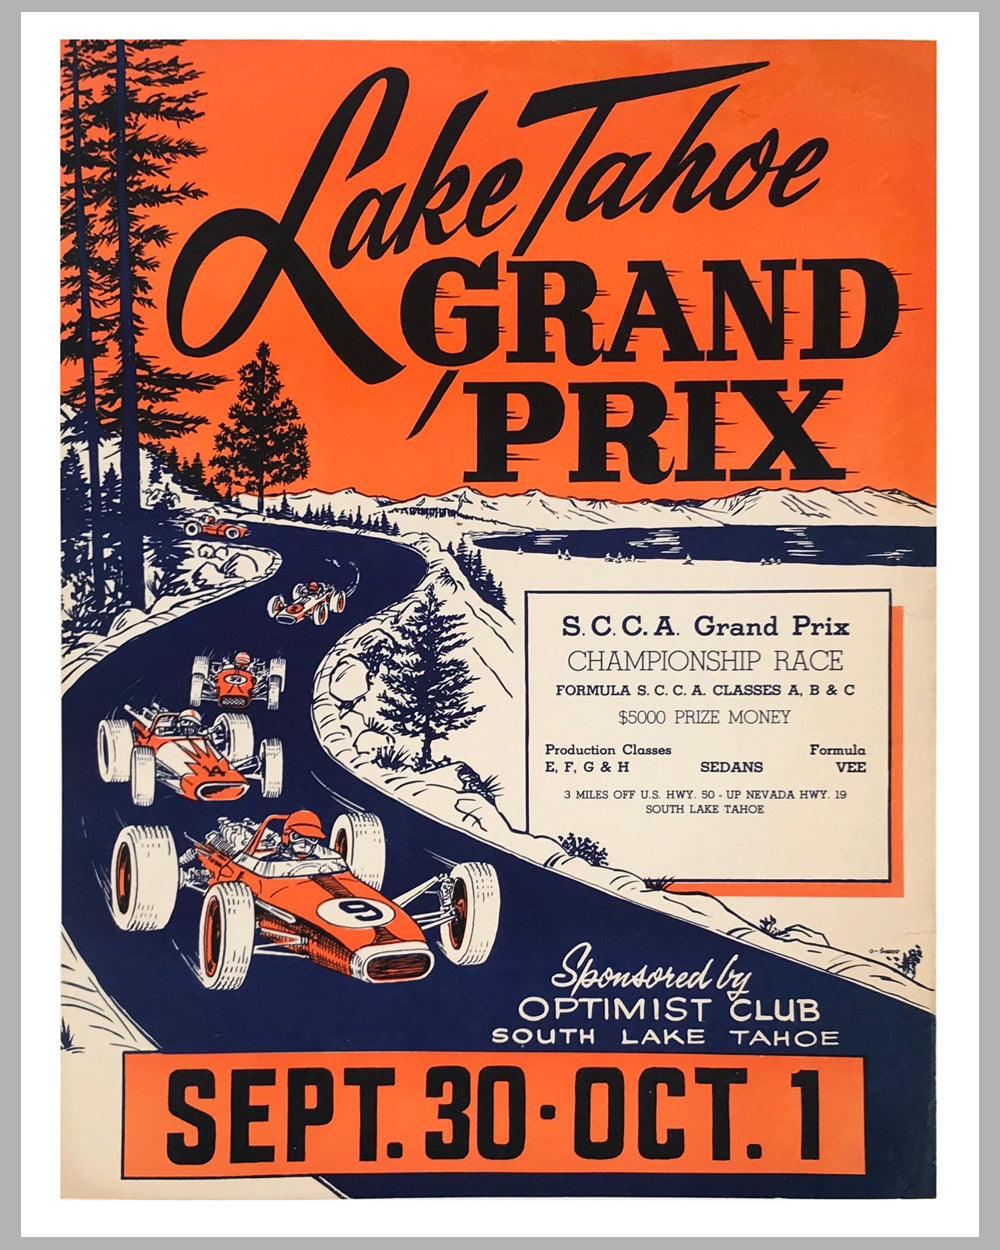 Lake Tahoe Grand Prix, 1967 advertising poster